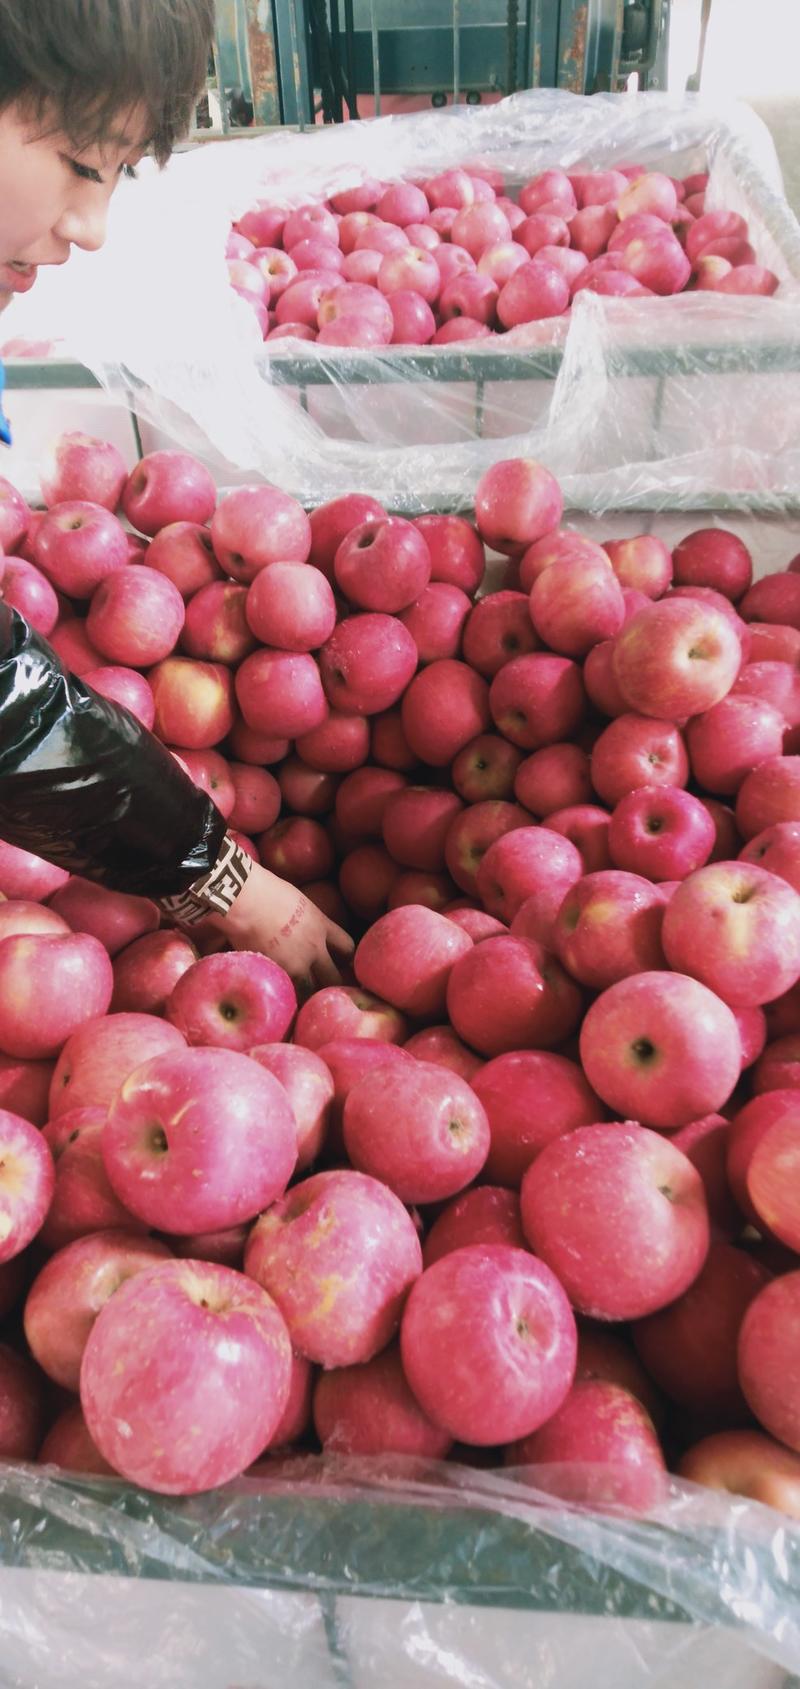 瓦房店红富士苹果价格便宜质量好正在大量出库。